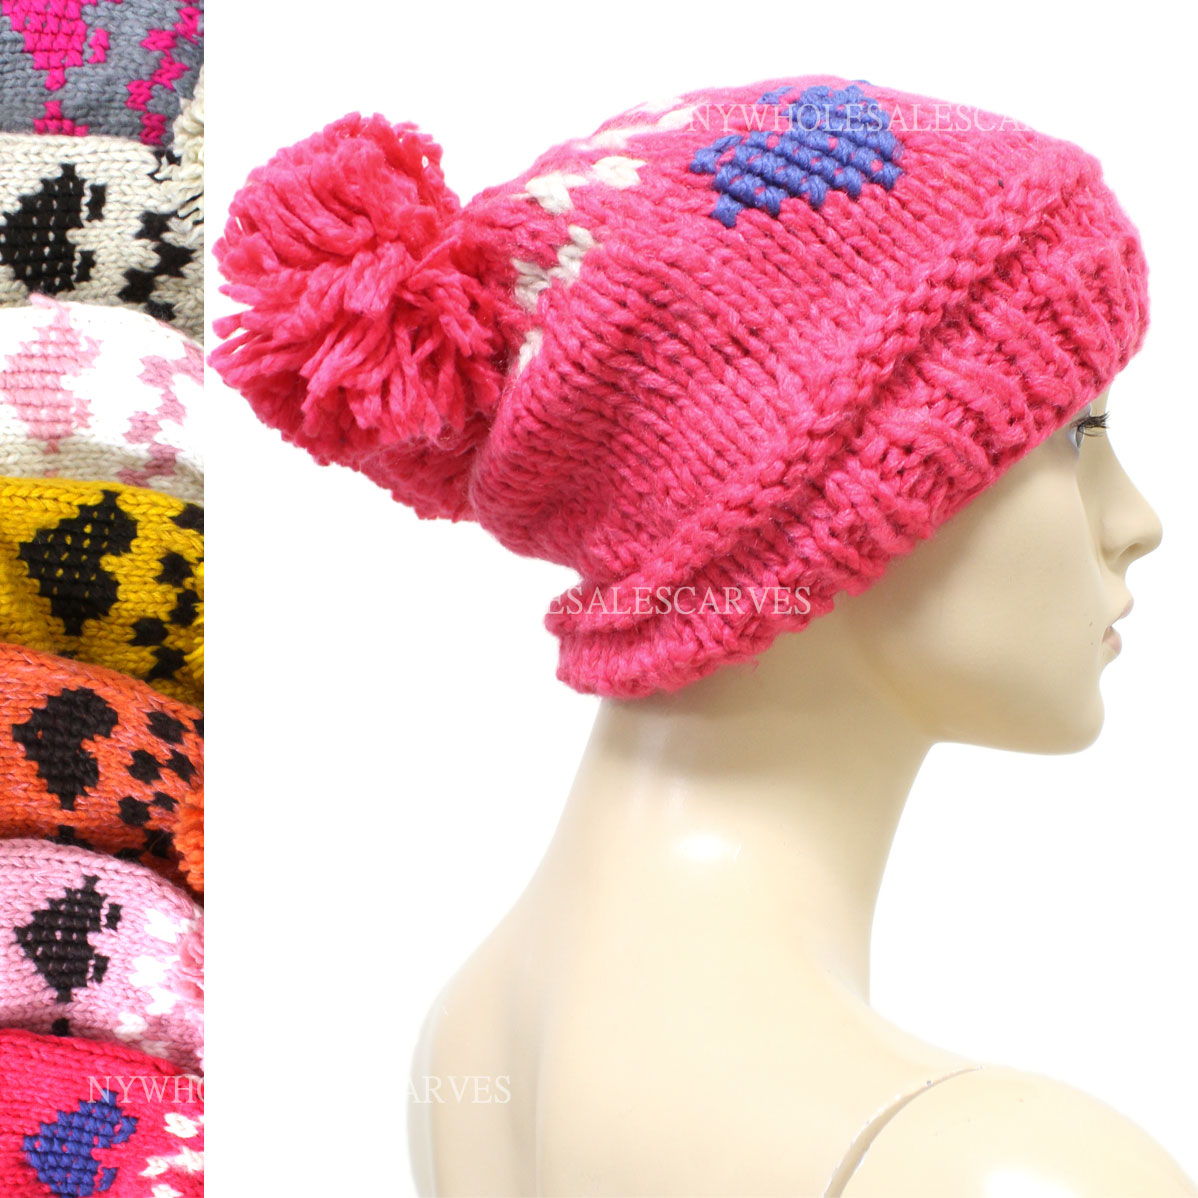 Double-Pompom Knit Winter Hat #F-03 (7 Colors, 1 Doz)